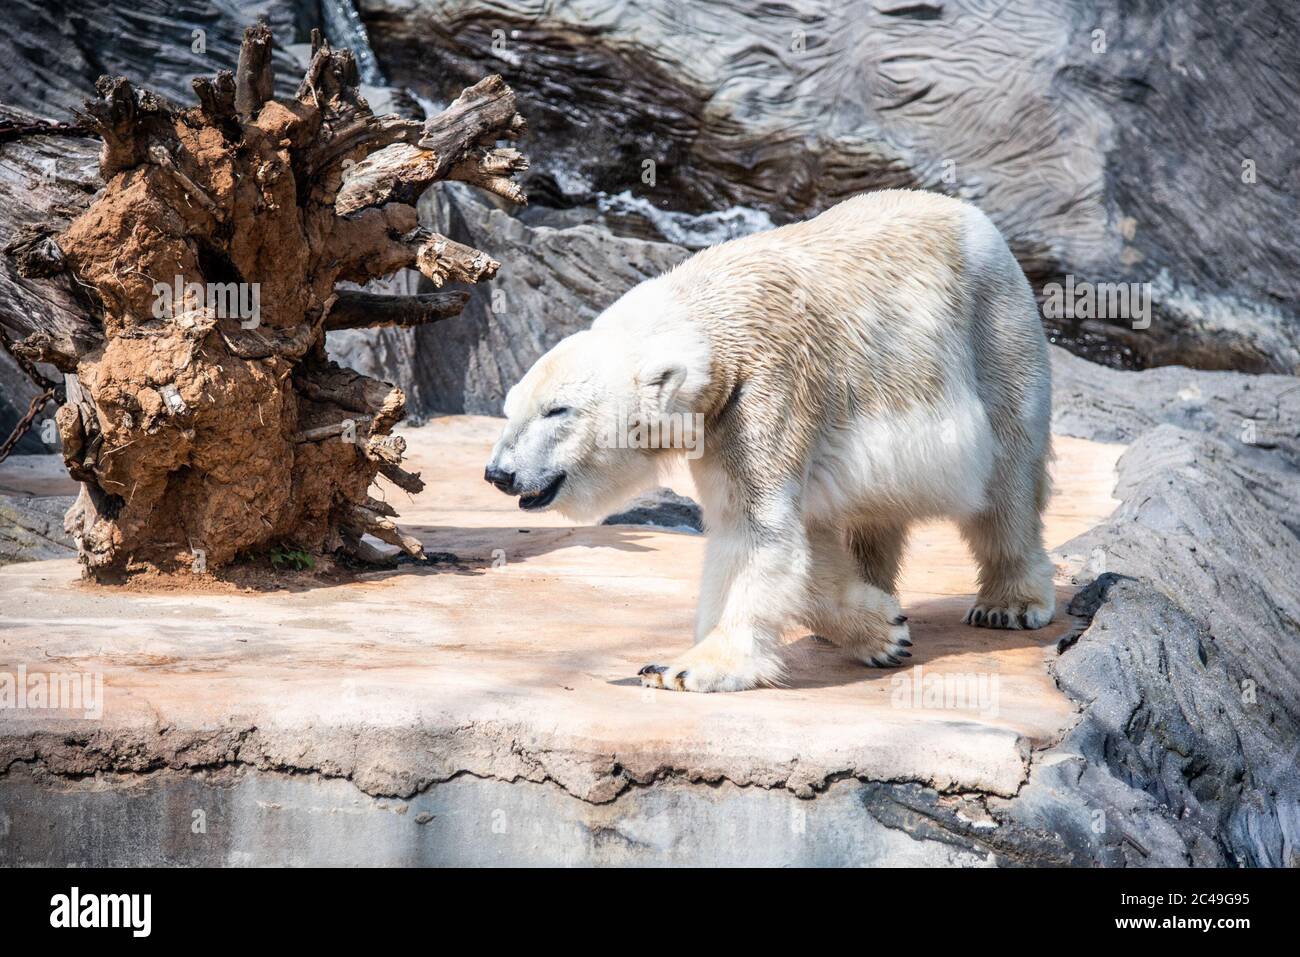 Whote orso polare camminare nello zoo. Foto Stock